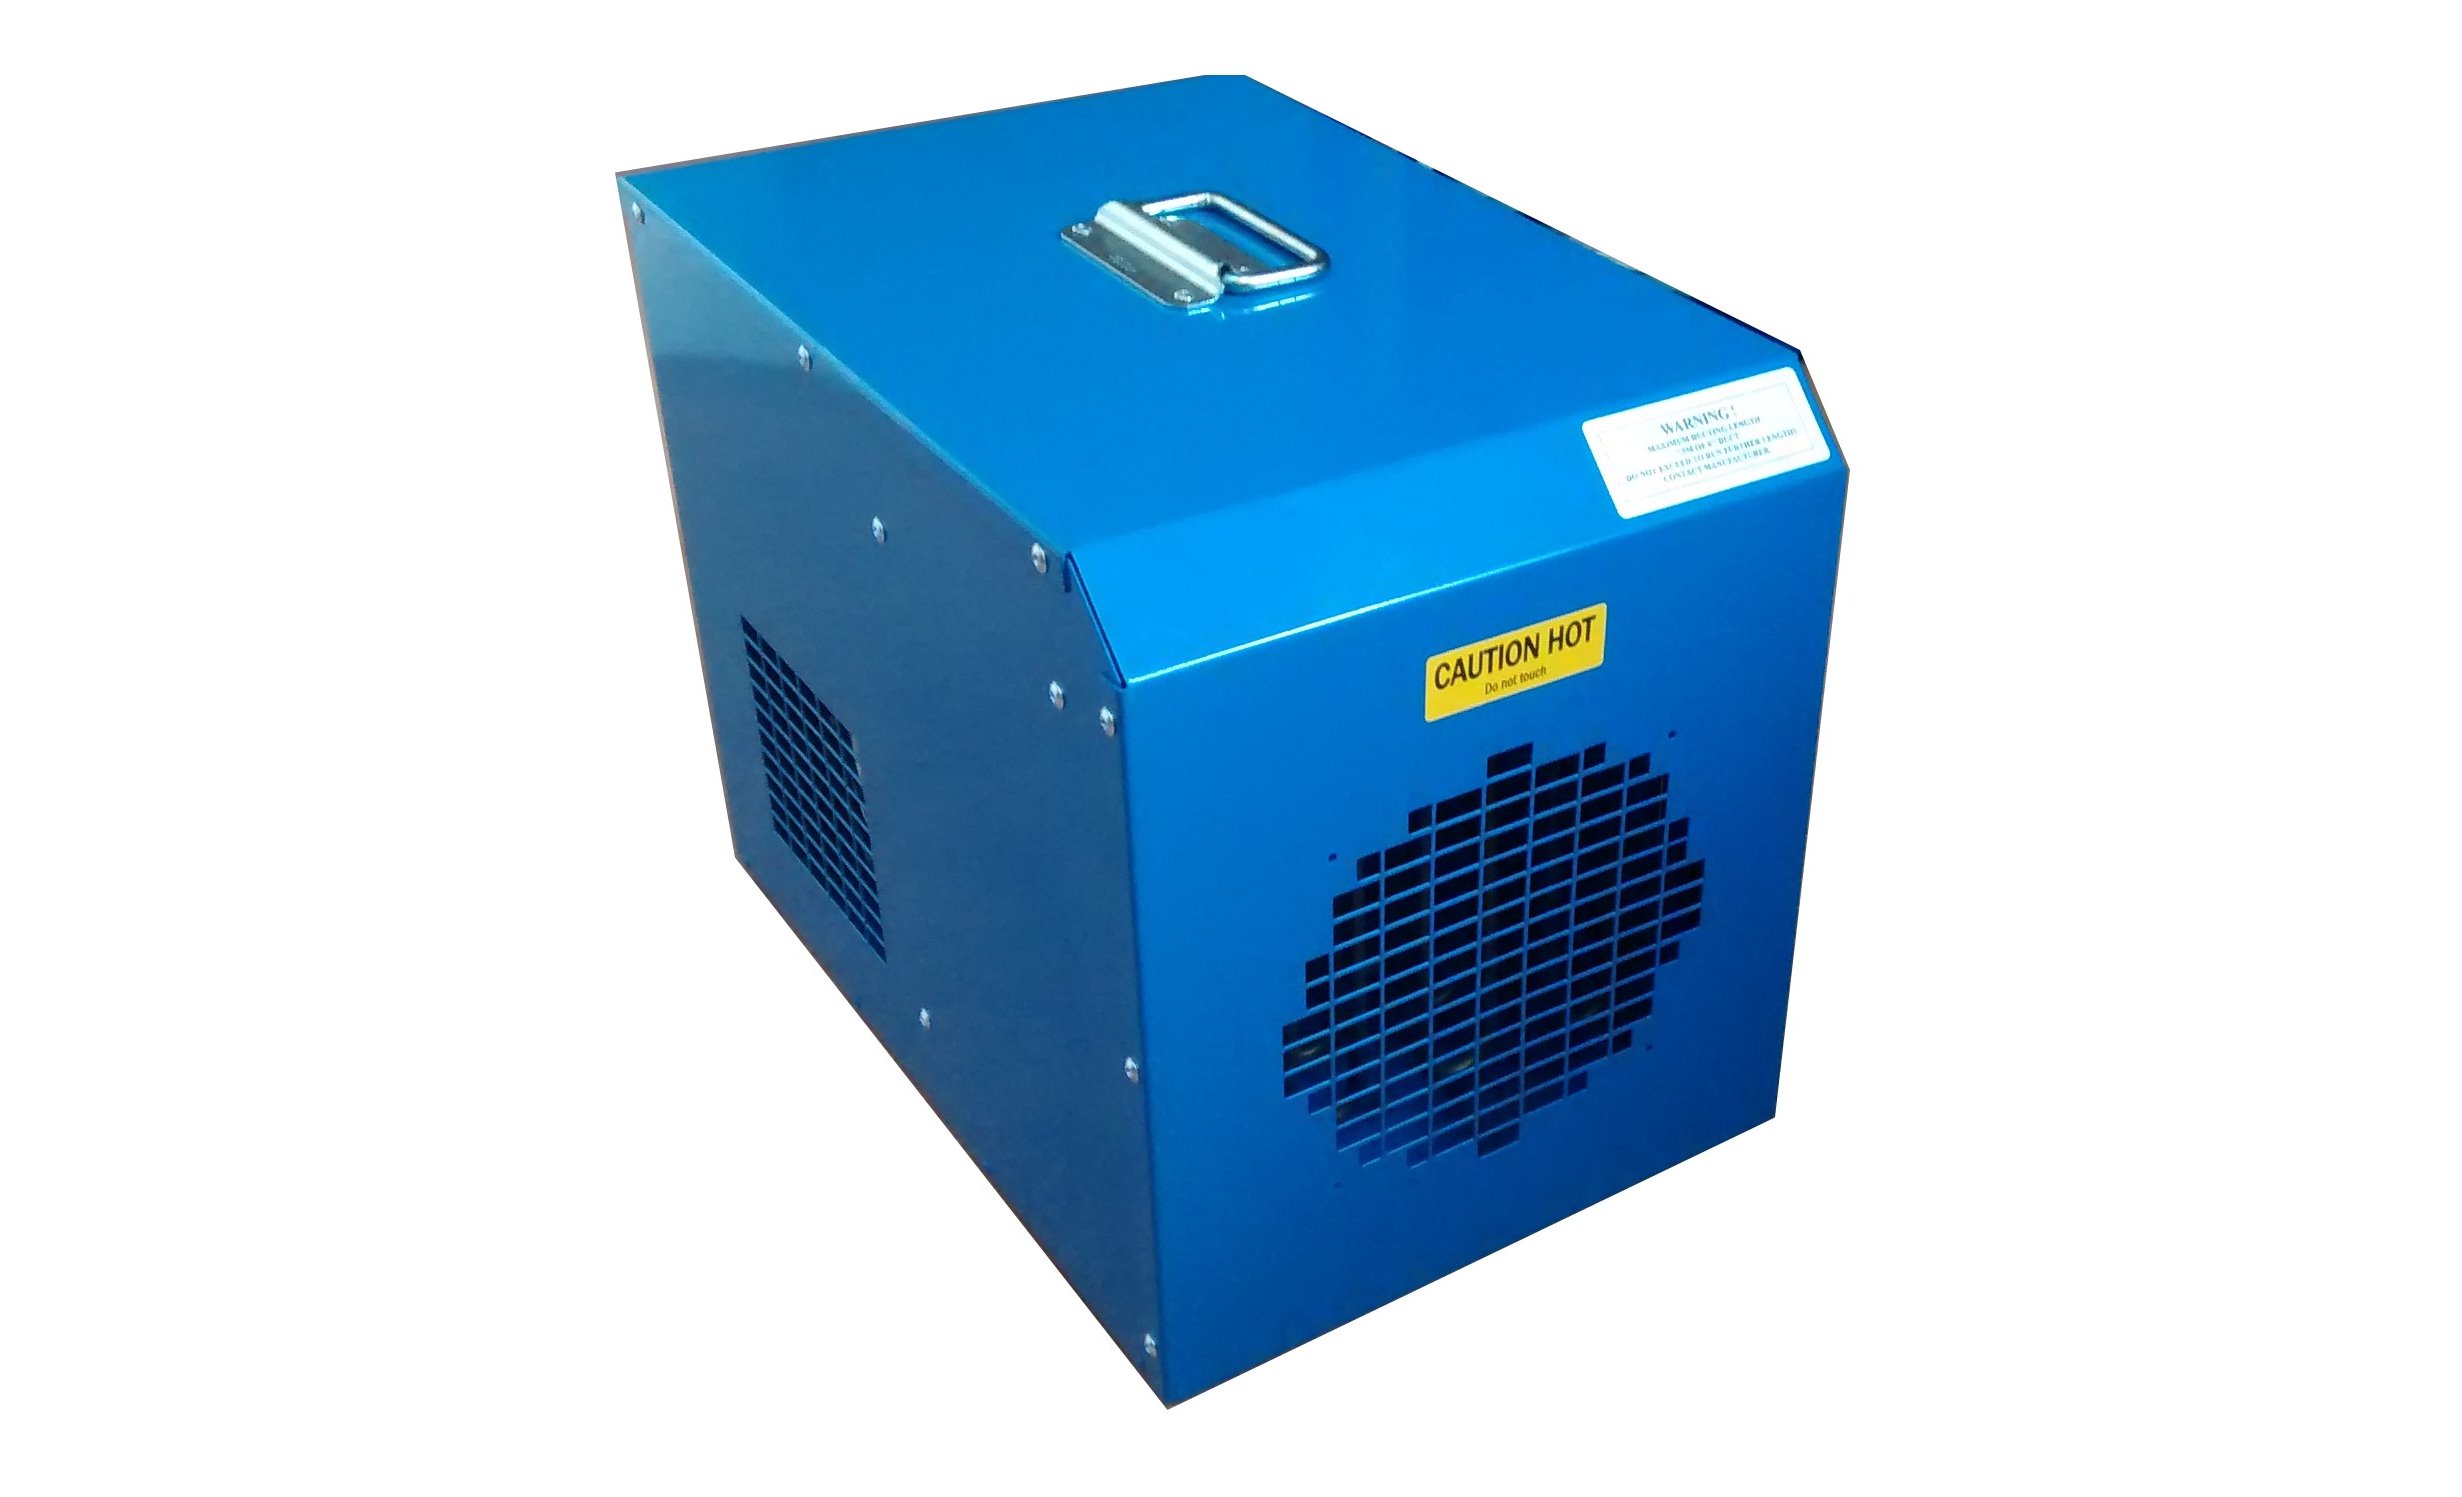 Overview of the Fireflo industrial fan heater range